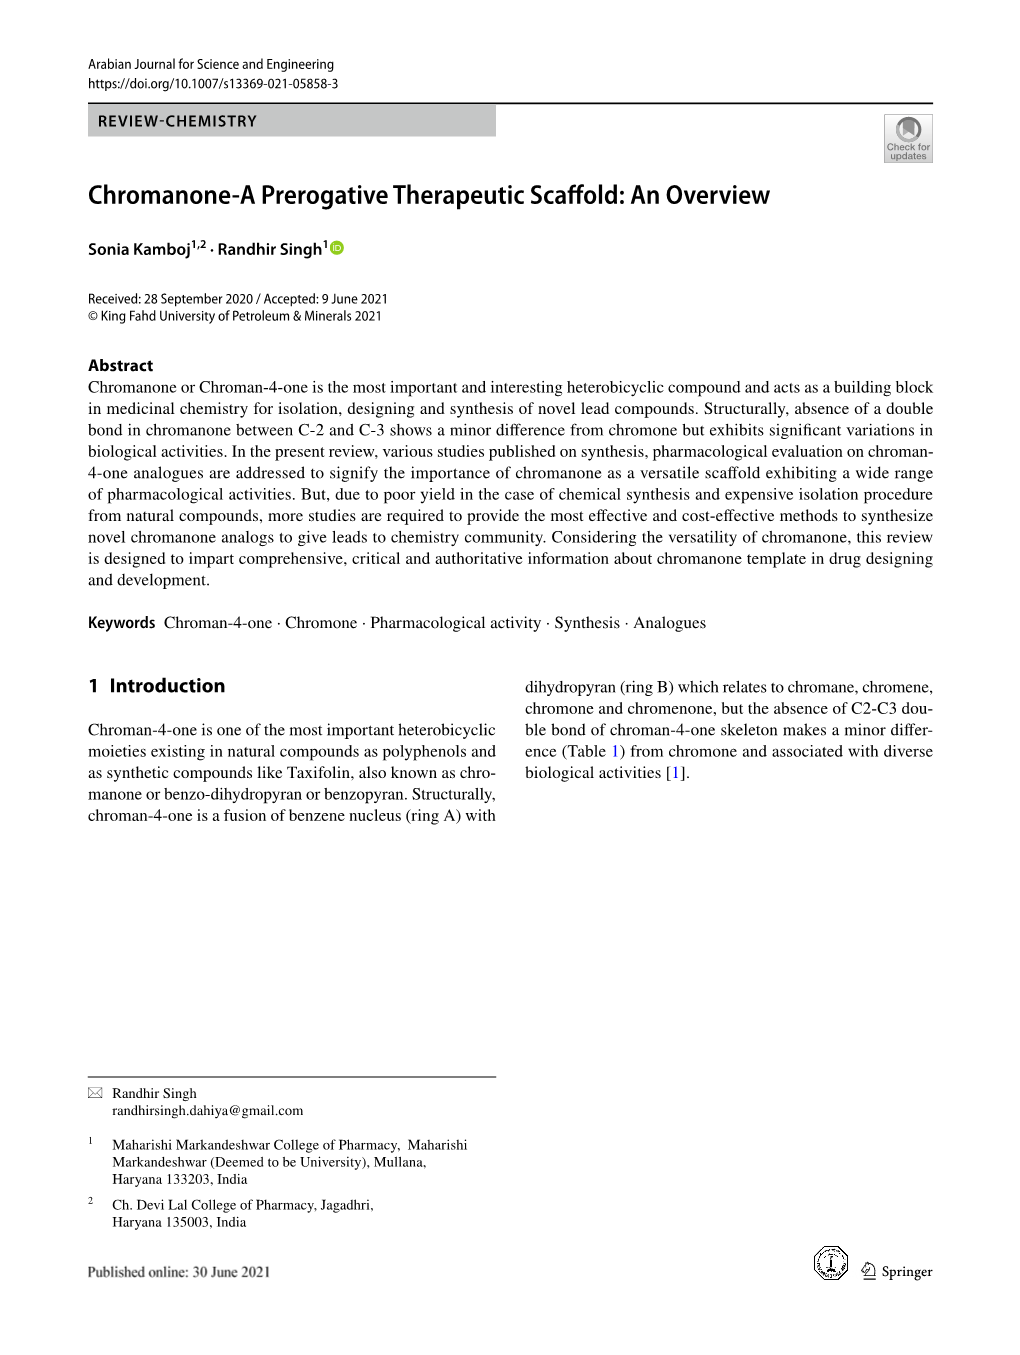 Chromanone-A Prerogative Therapeutic Scaffold: an Overview